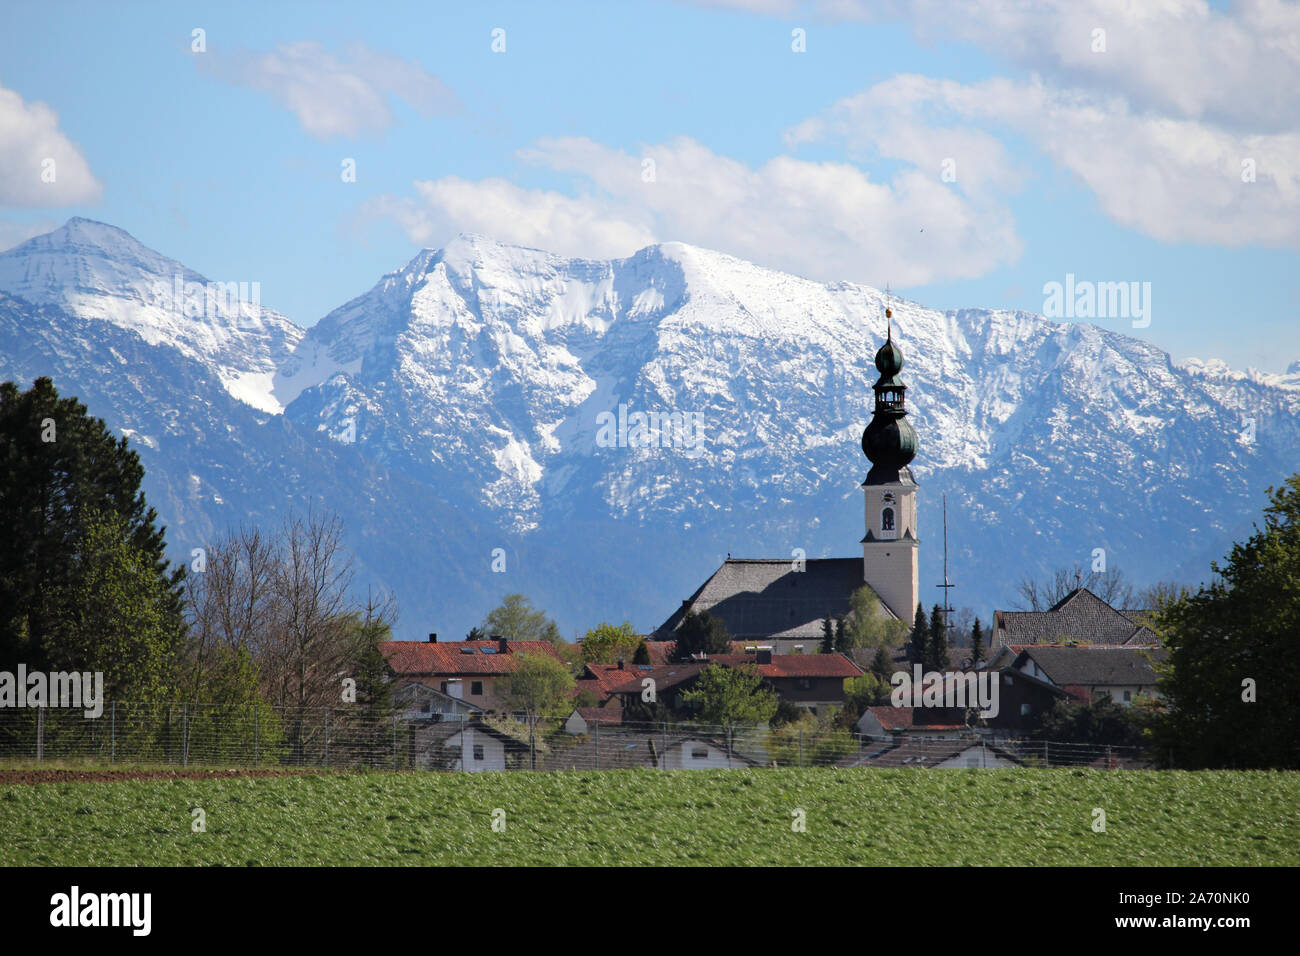 Die Pfarrkirche von Traunwalchen scheint in diesem Telefoto ganz nah vor den schneewänden der Chiemgauer Berge * Traunwalchen vor der Alpen Stockfoto